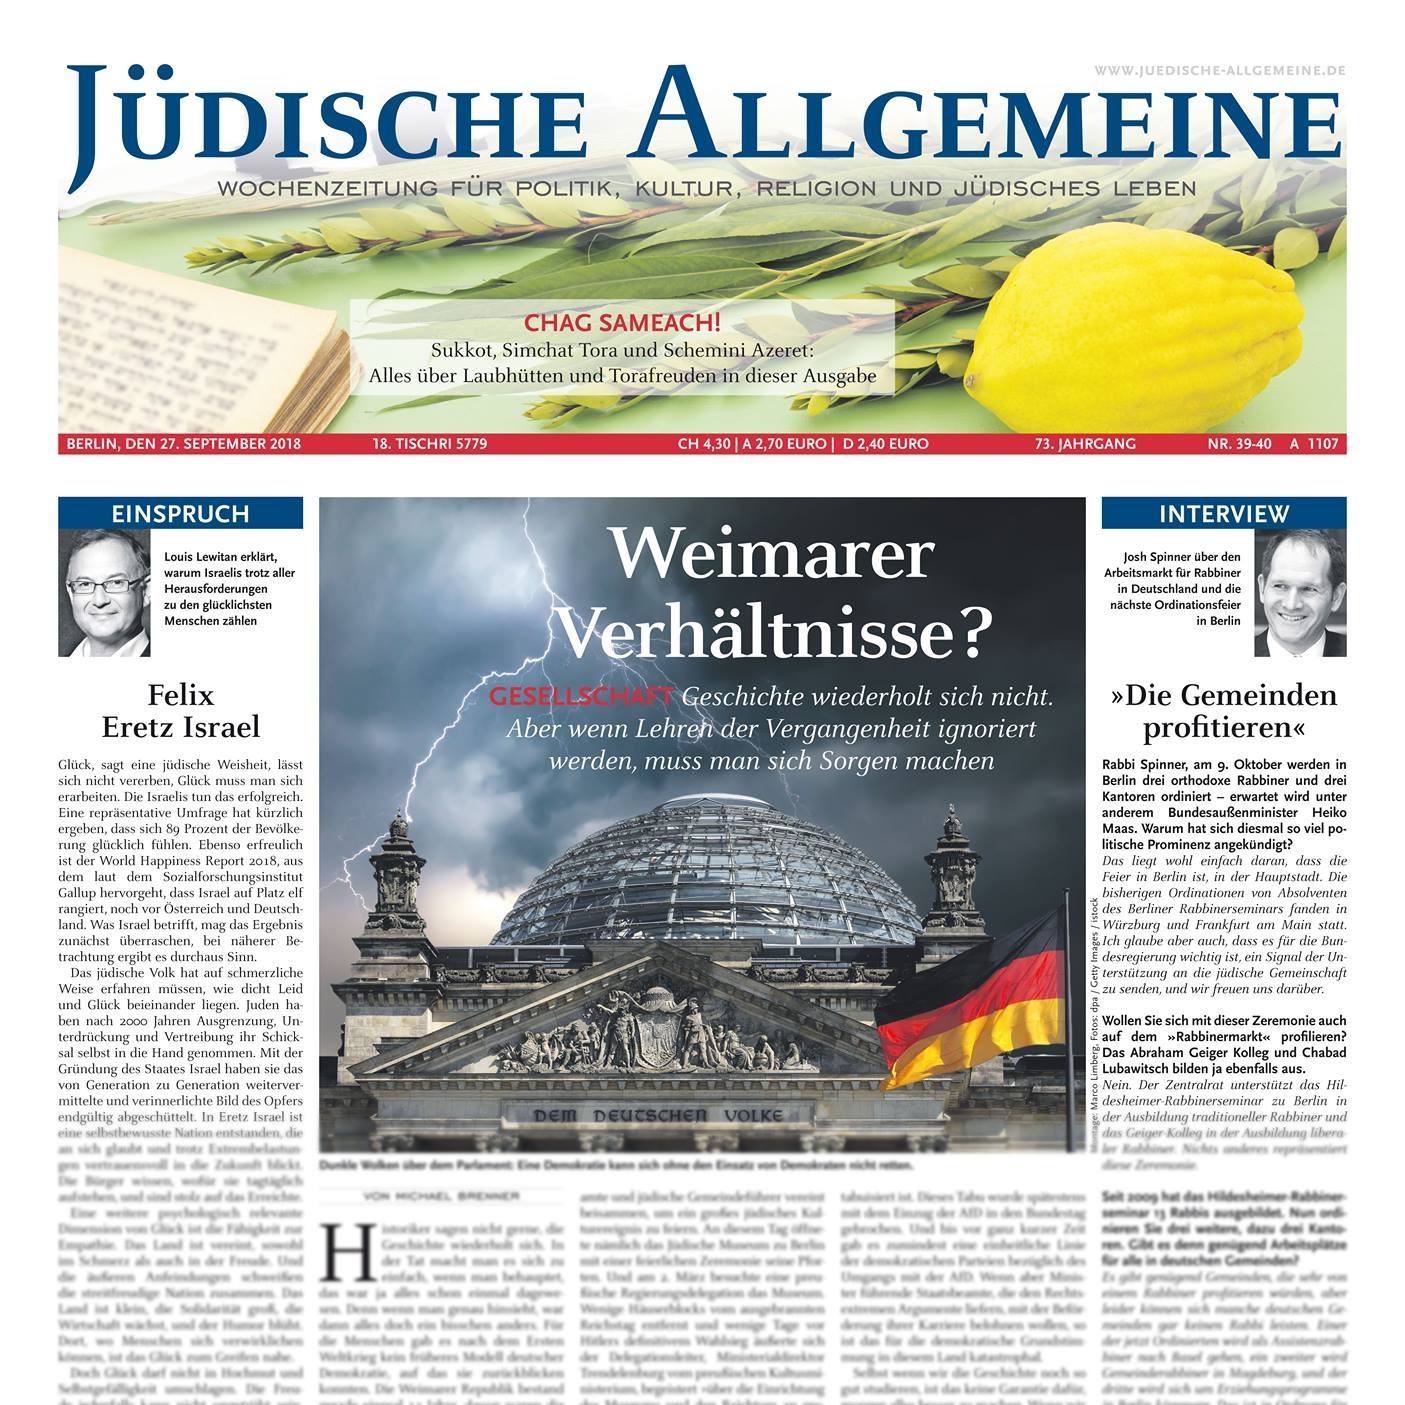 "Jüdische Allgemeine"